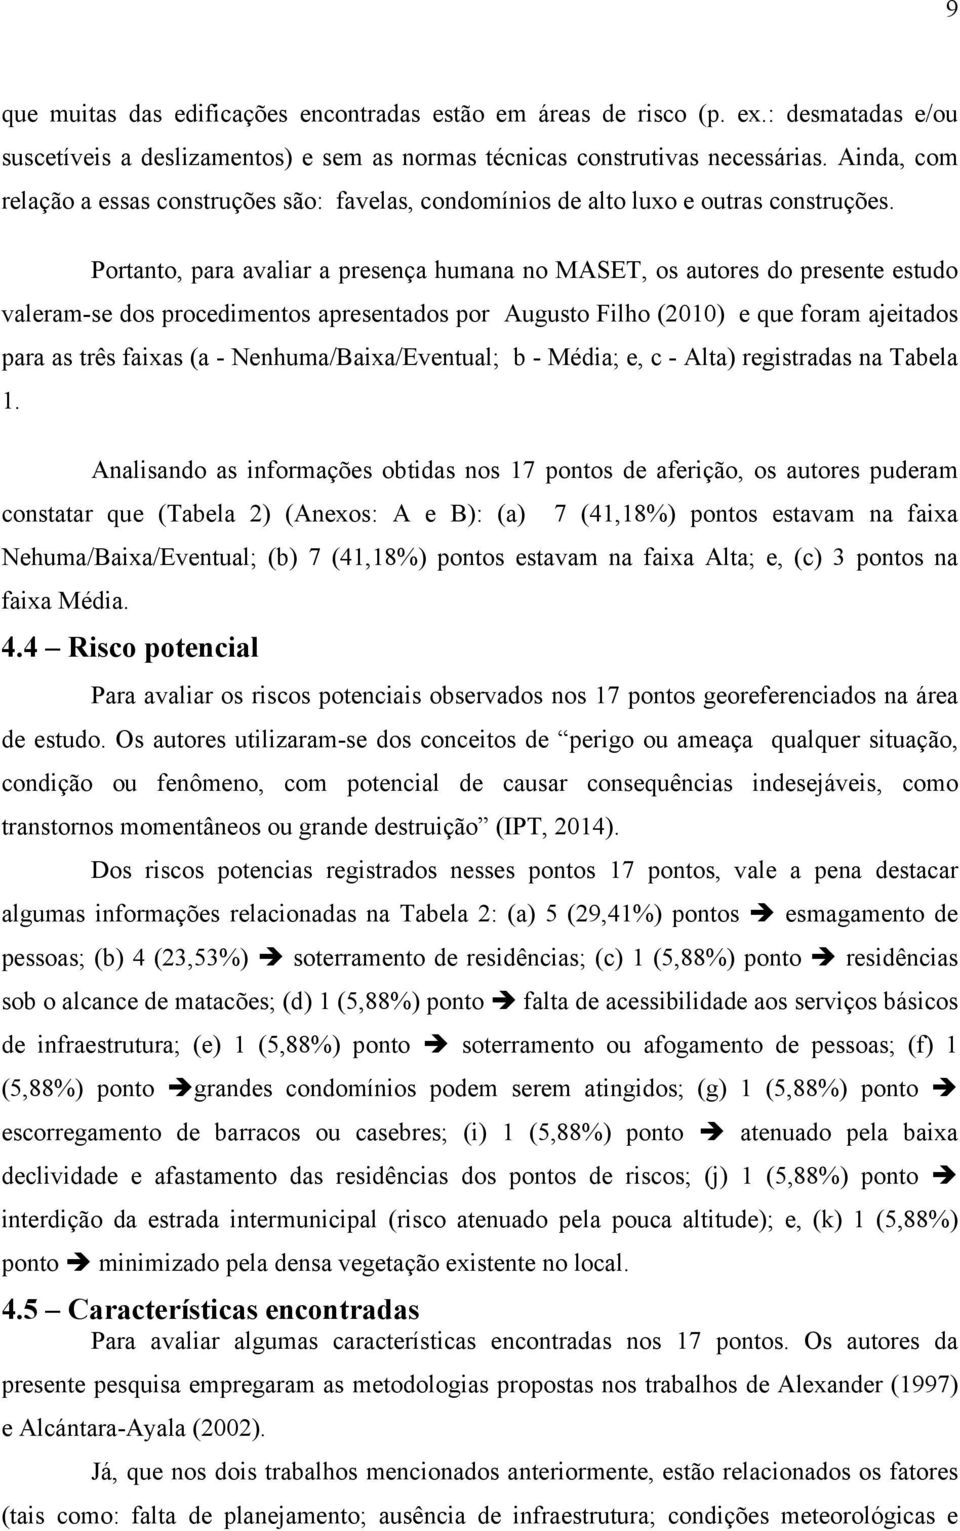 Portanto, para avaliar a prsnça humana no MASET, os autors do prsnt studo valram-s dos procdimntos aprsntados por Augusto Filho (2010) qu foram ajitados para as três faixas (a - Nnhuma/Baixa/Evntual;